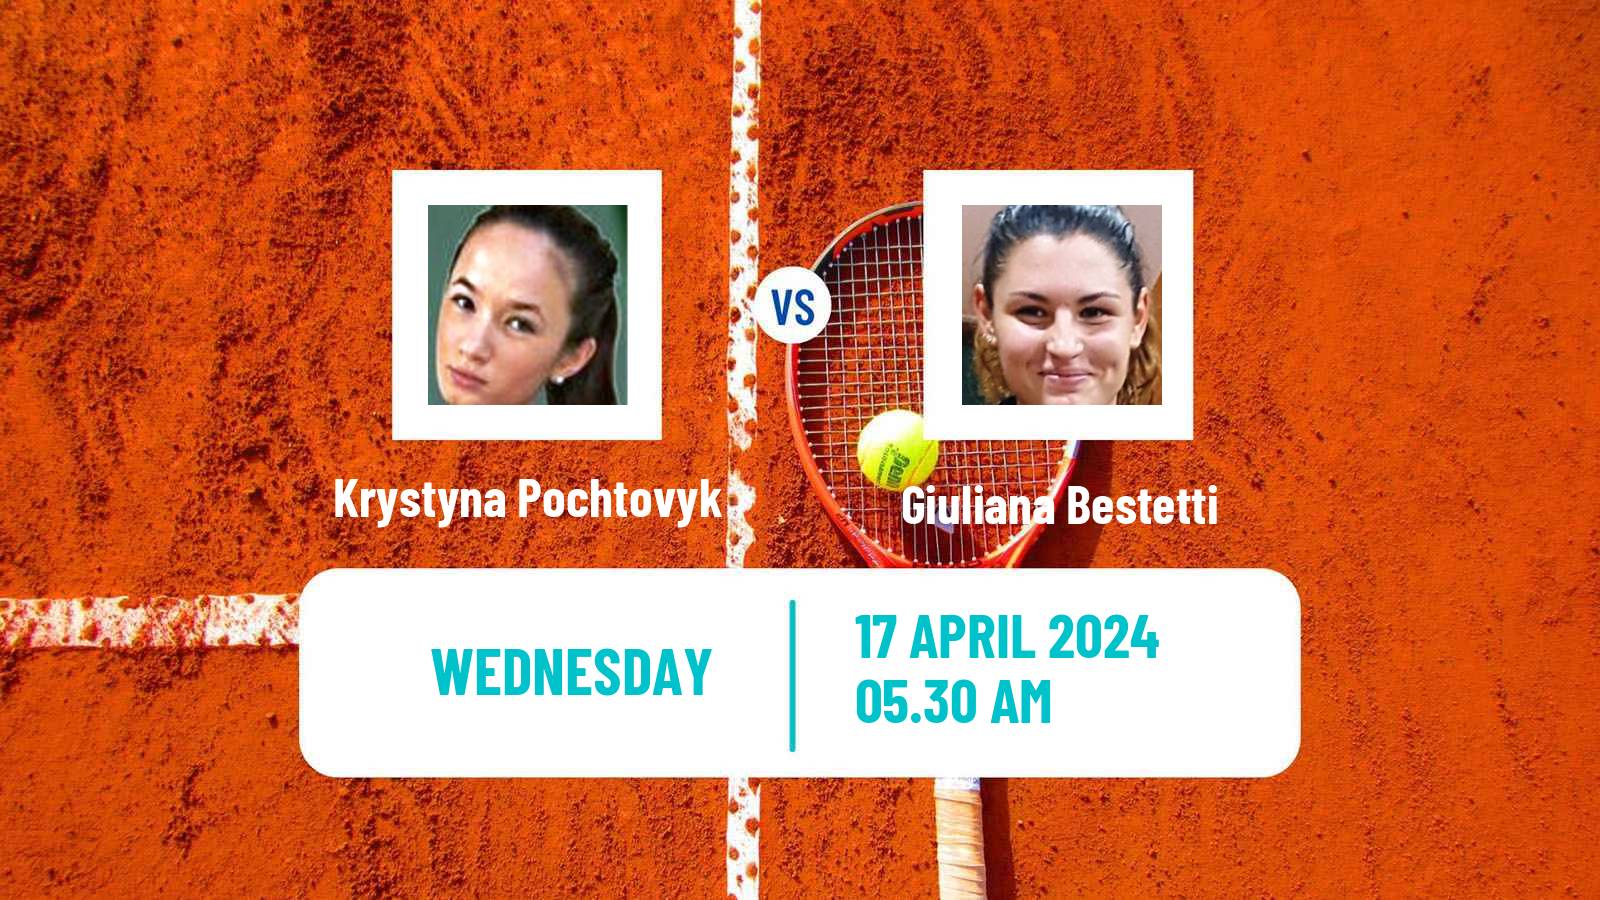 Tennis ITF W15 Antalya 10 Women Krystyna Pochtovyk - Giuliana Bestetti